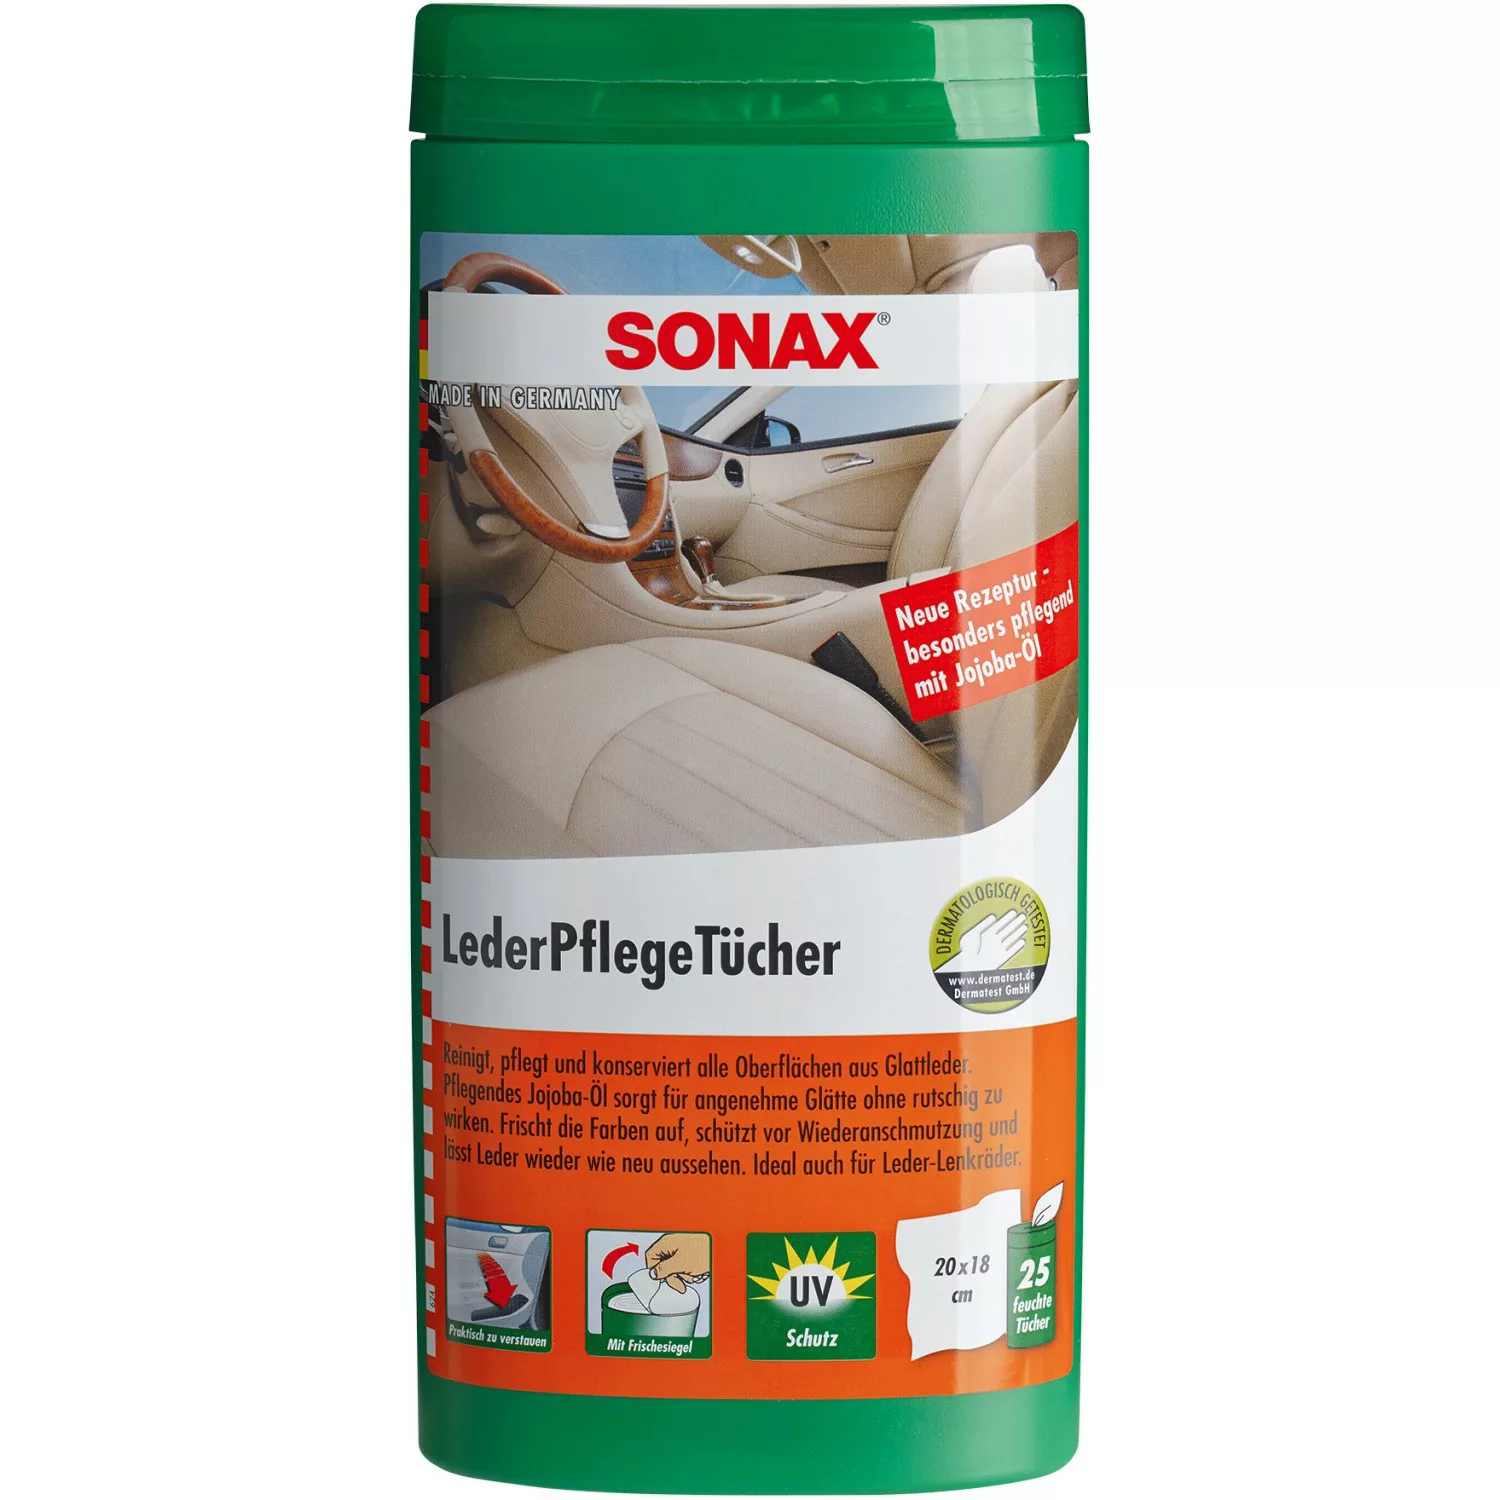 Sonax Lederpflege-Tücher Box 25 Stück günstig online kaufen